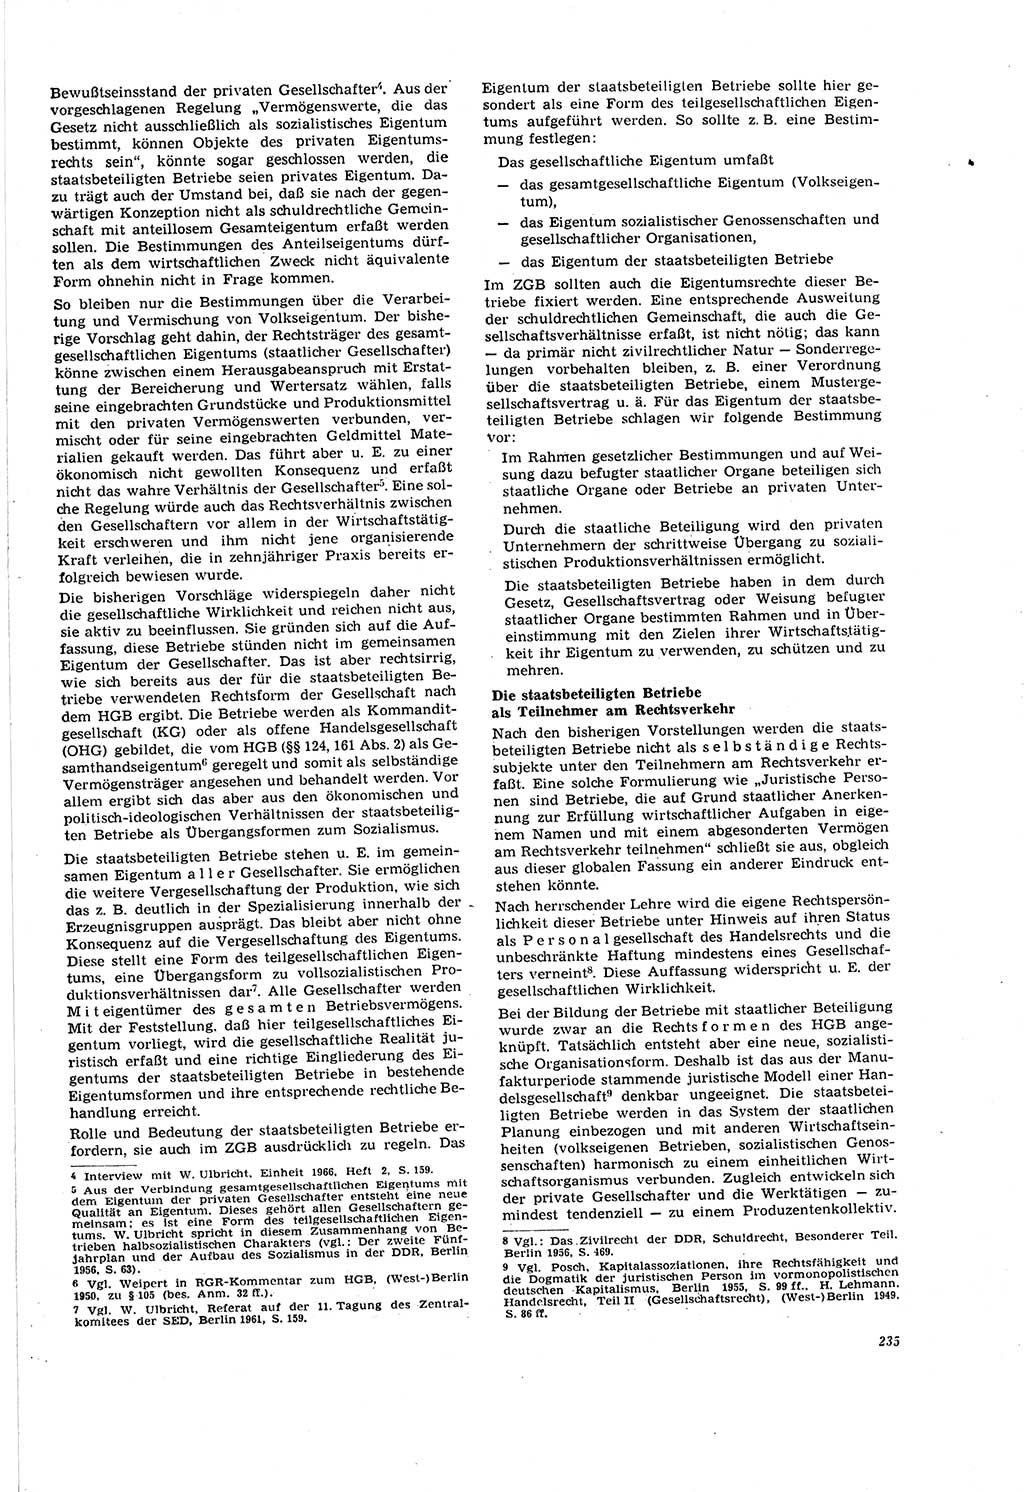 Neue Justiz (NJ), Zeitschrift für Recht und Rechtswissenschaft [Deutsche Demokratische Republik (DDR)], 20. Jahrgang 1966, Seite 235 (NJ DDR 1966, S. 235)